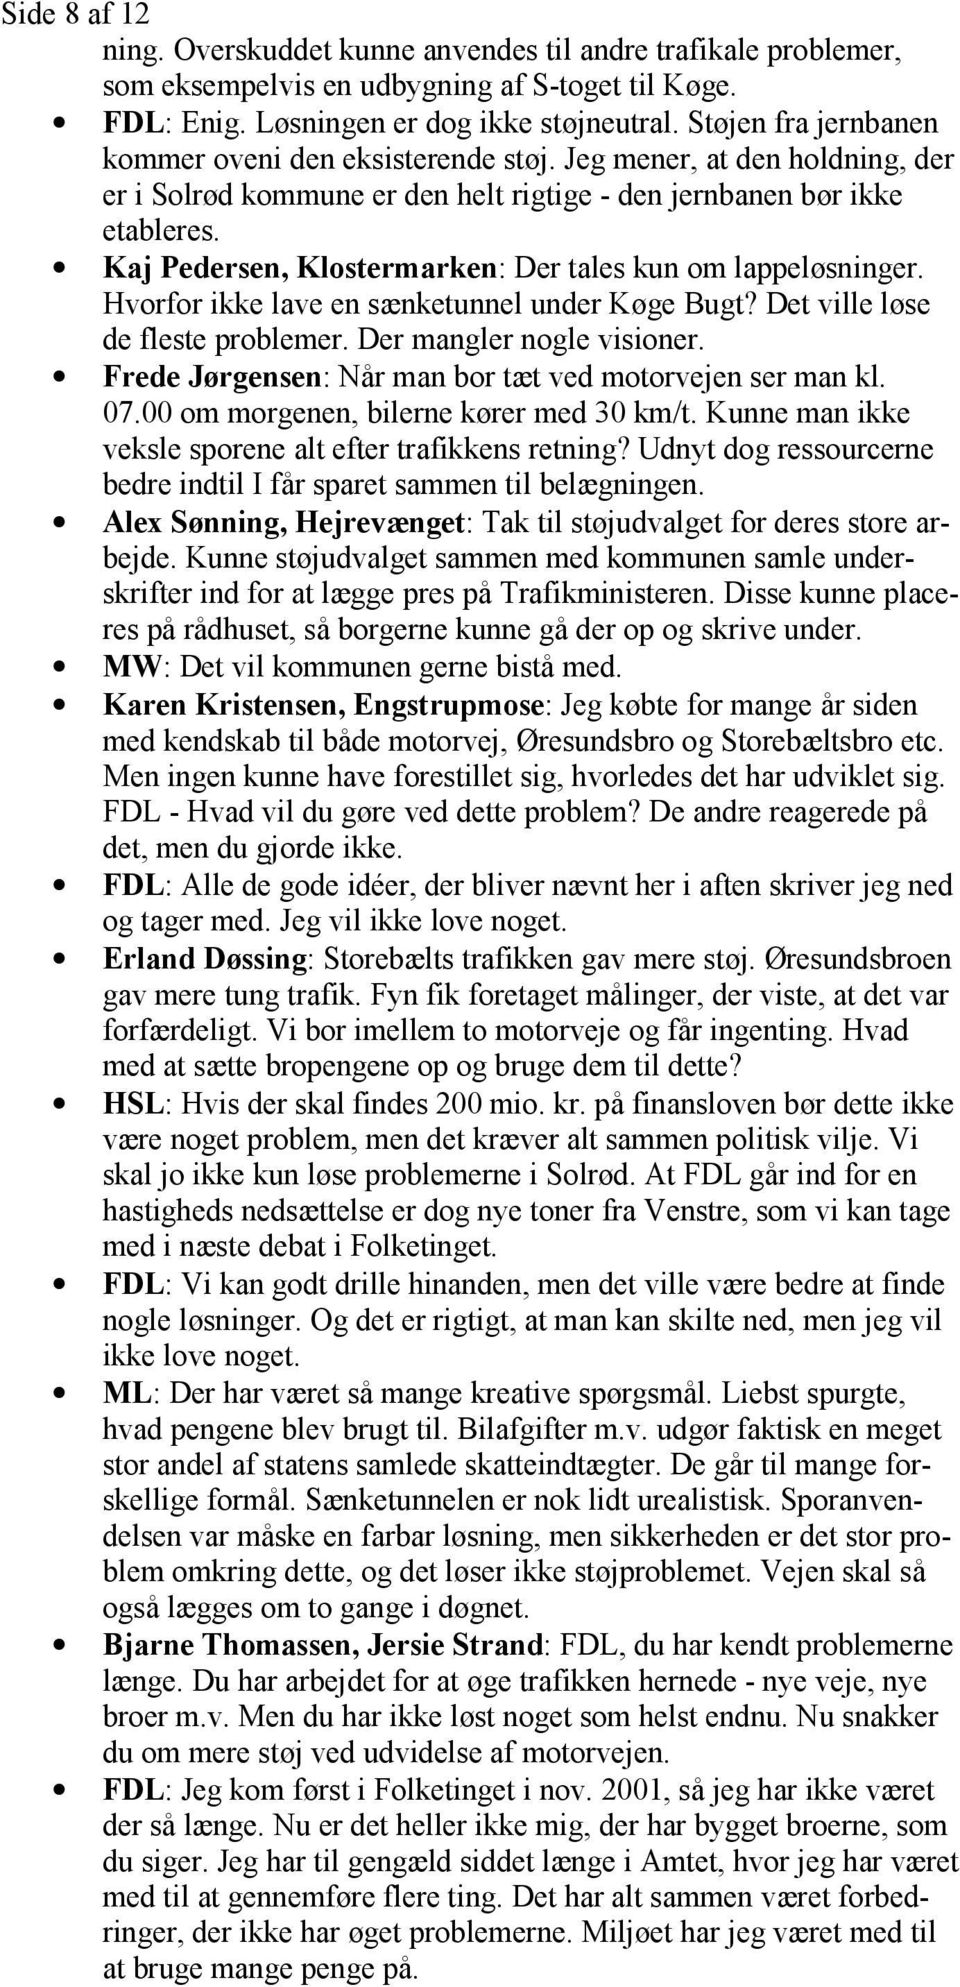 Kaj Pedersen, Klostermarken: Der tales kun om lappeløsninger. Hvorfor ikke lave en sænketunnel under Køge Bugt? Det ville løse de fleste problemer. Der mangler nogle visioner.